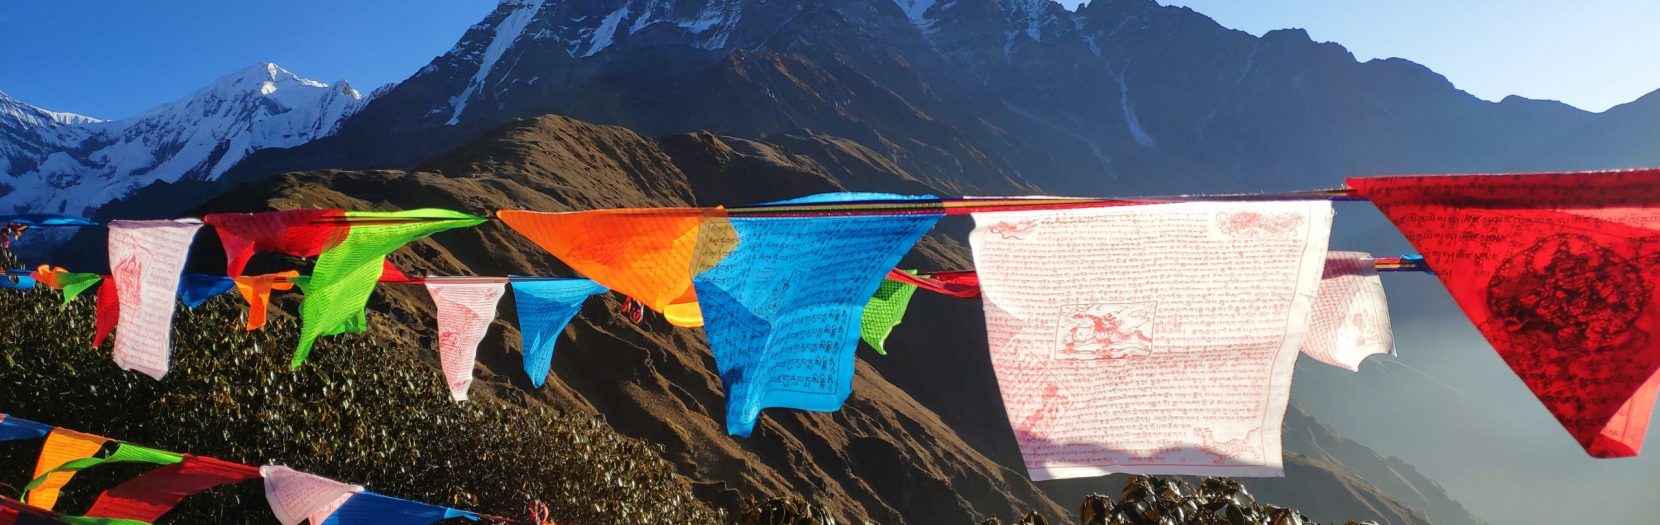 Ấn Tượng Với Đặc Sắc Nghệ Thuật Của Tây Tạng